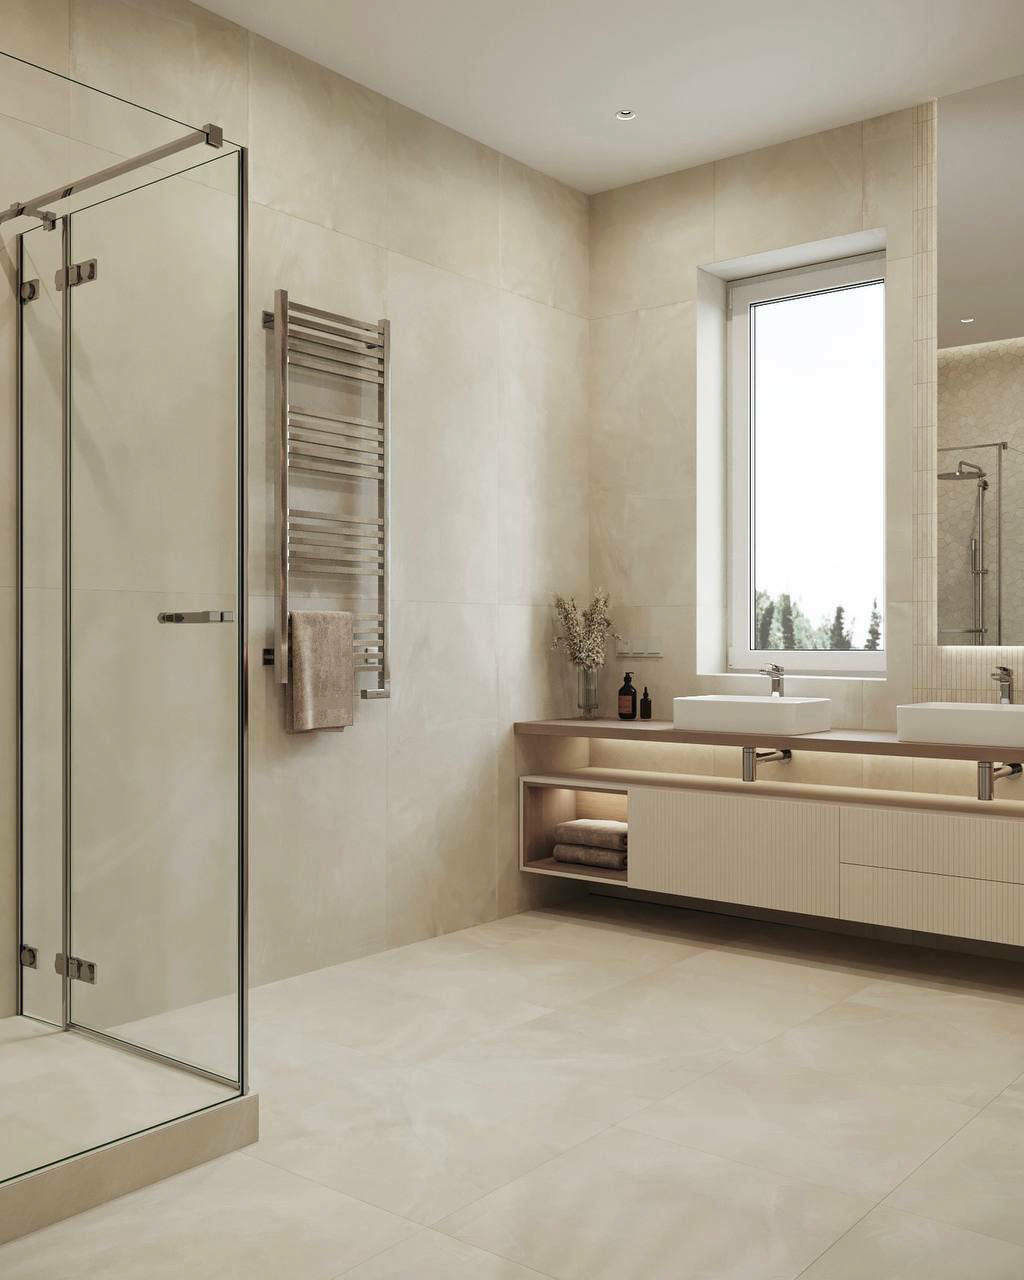 дизайн интерьера интерьер спальня детская ванная interior design  visualization modern 3D pink